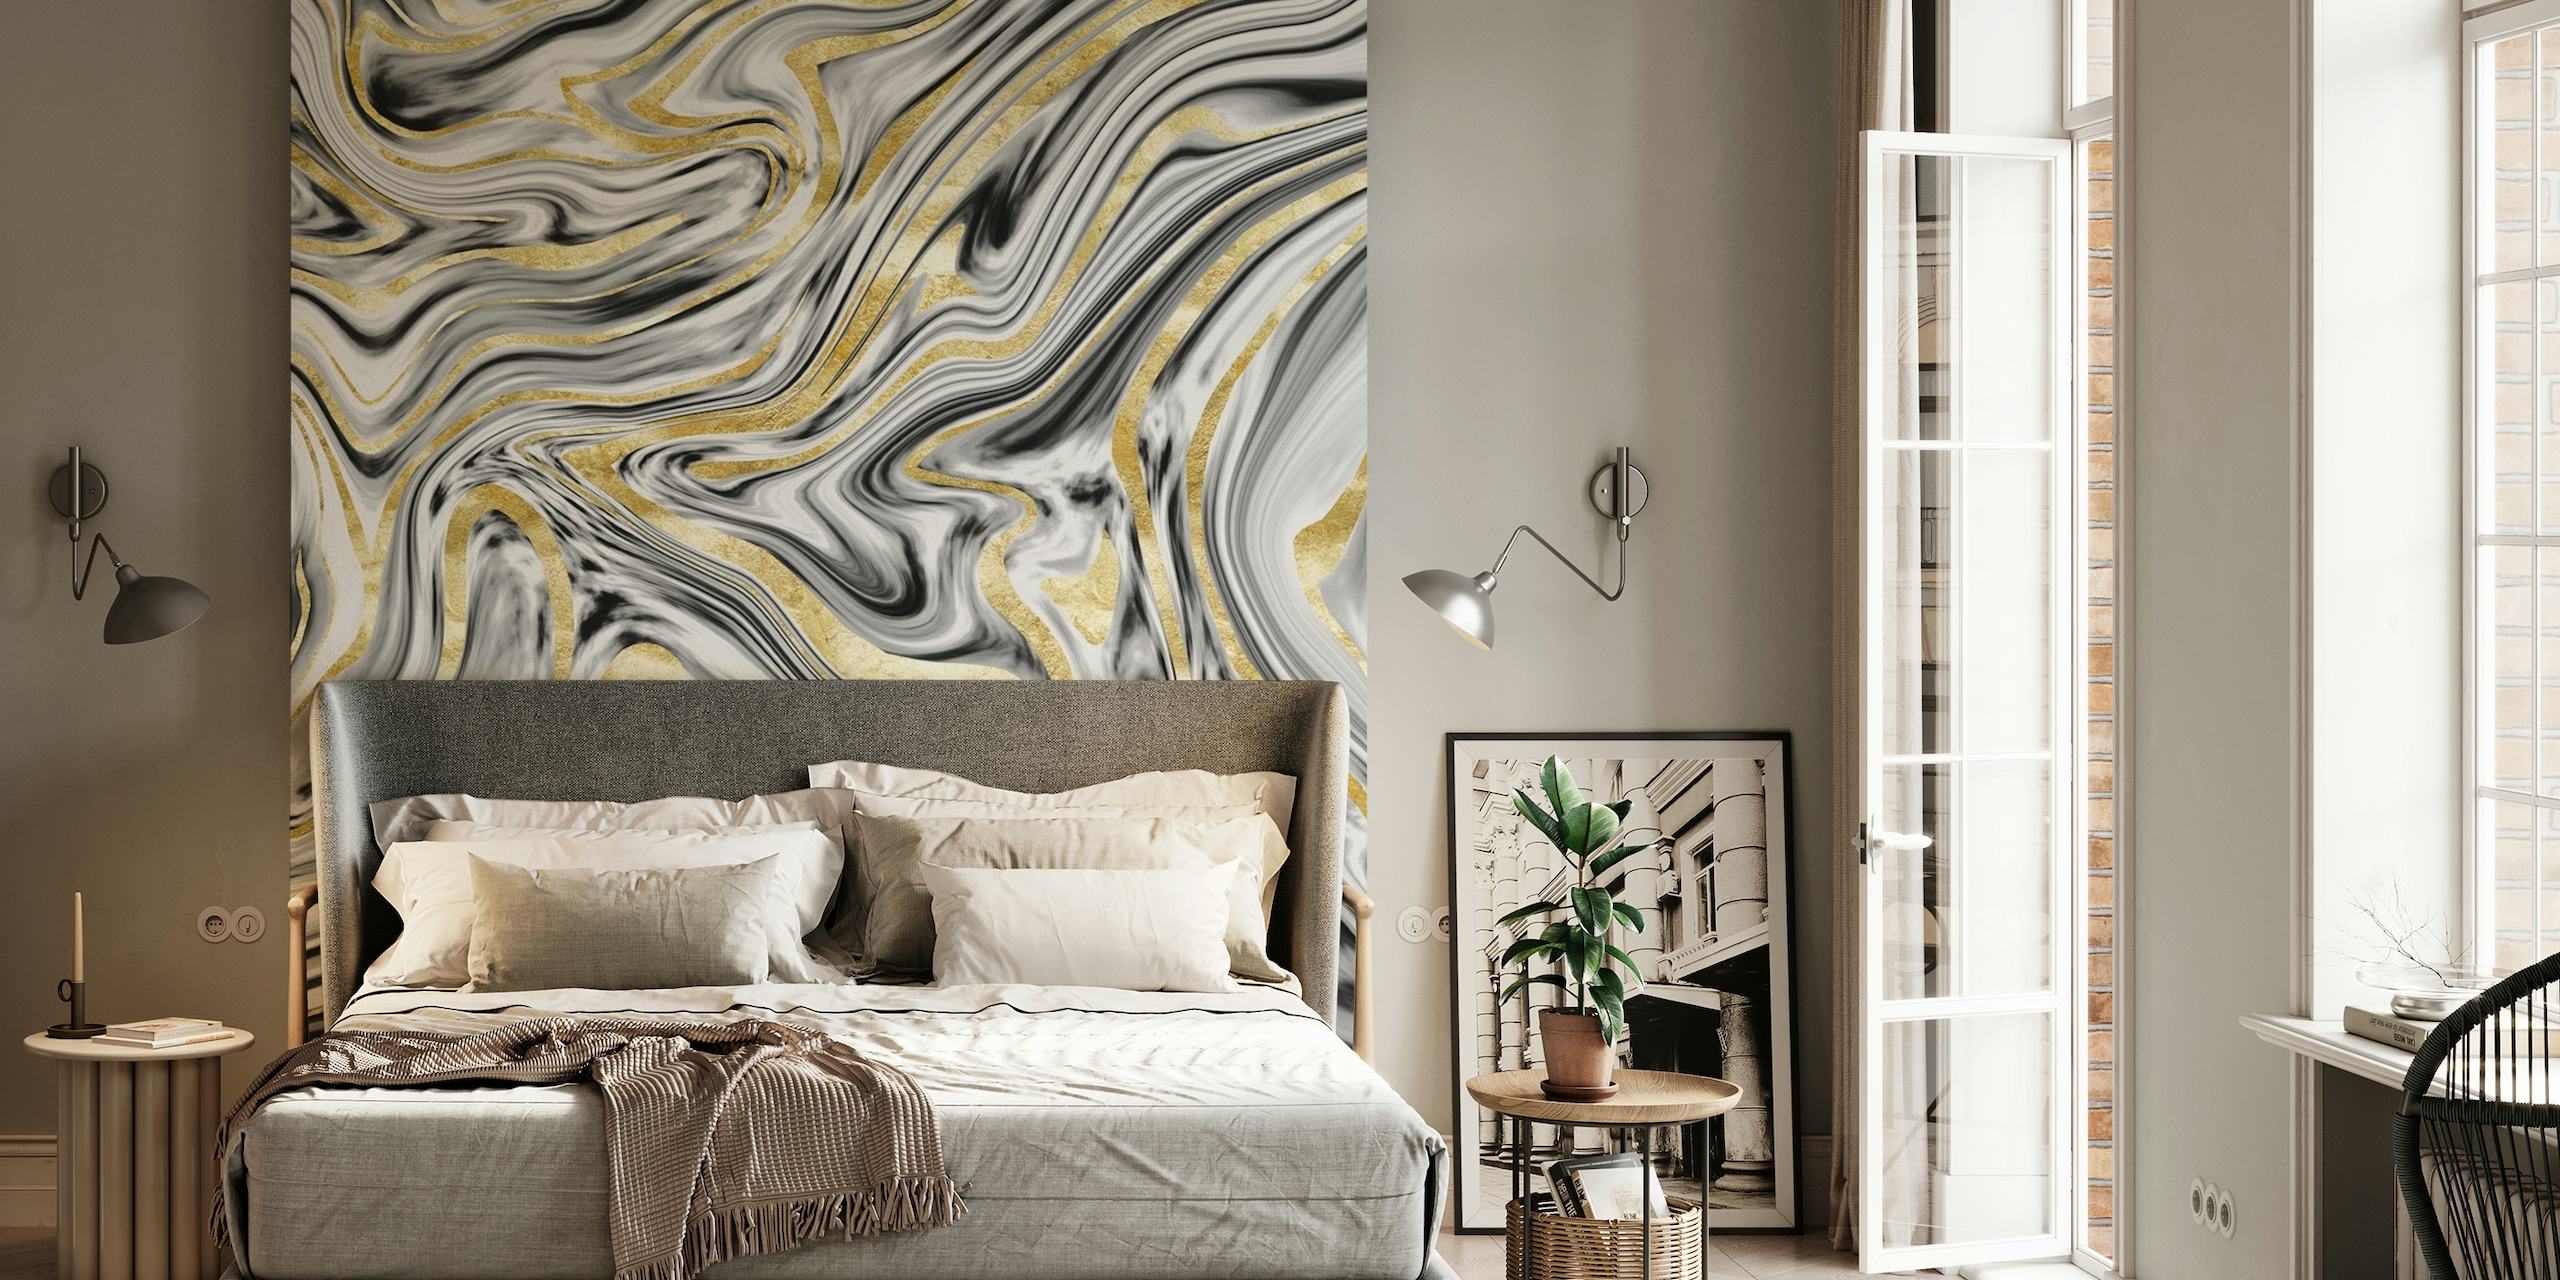 Wandgemälde mit wirbelndem Marmormuster in Grau, Schwarz, Weiß und Gold